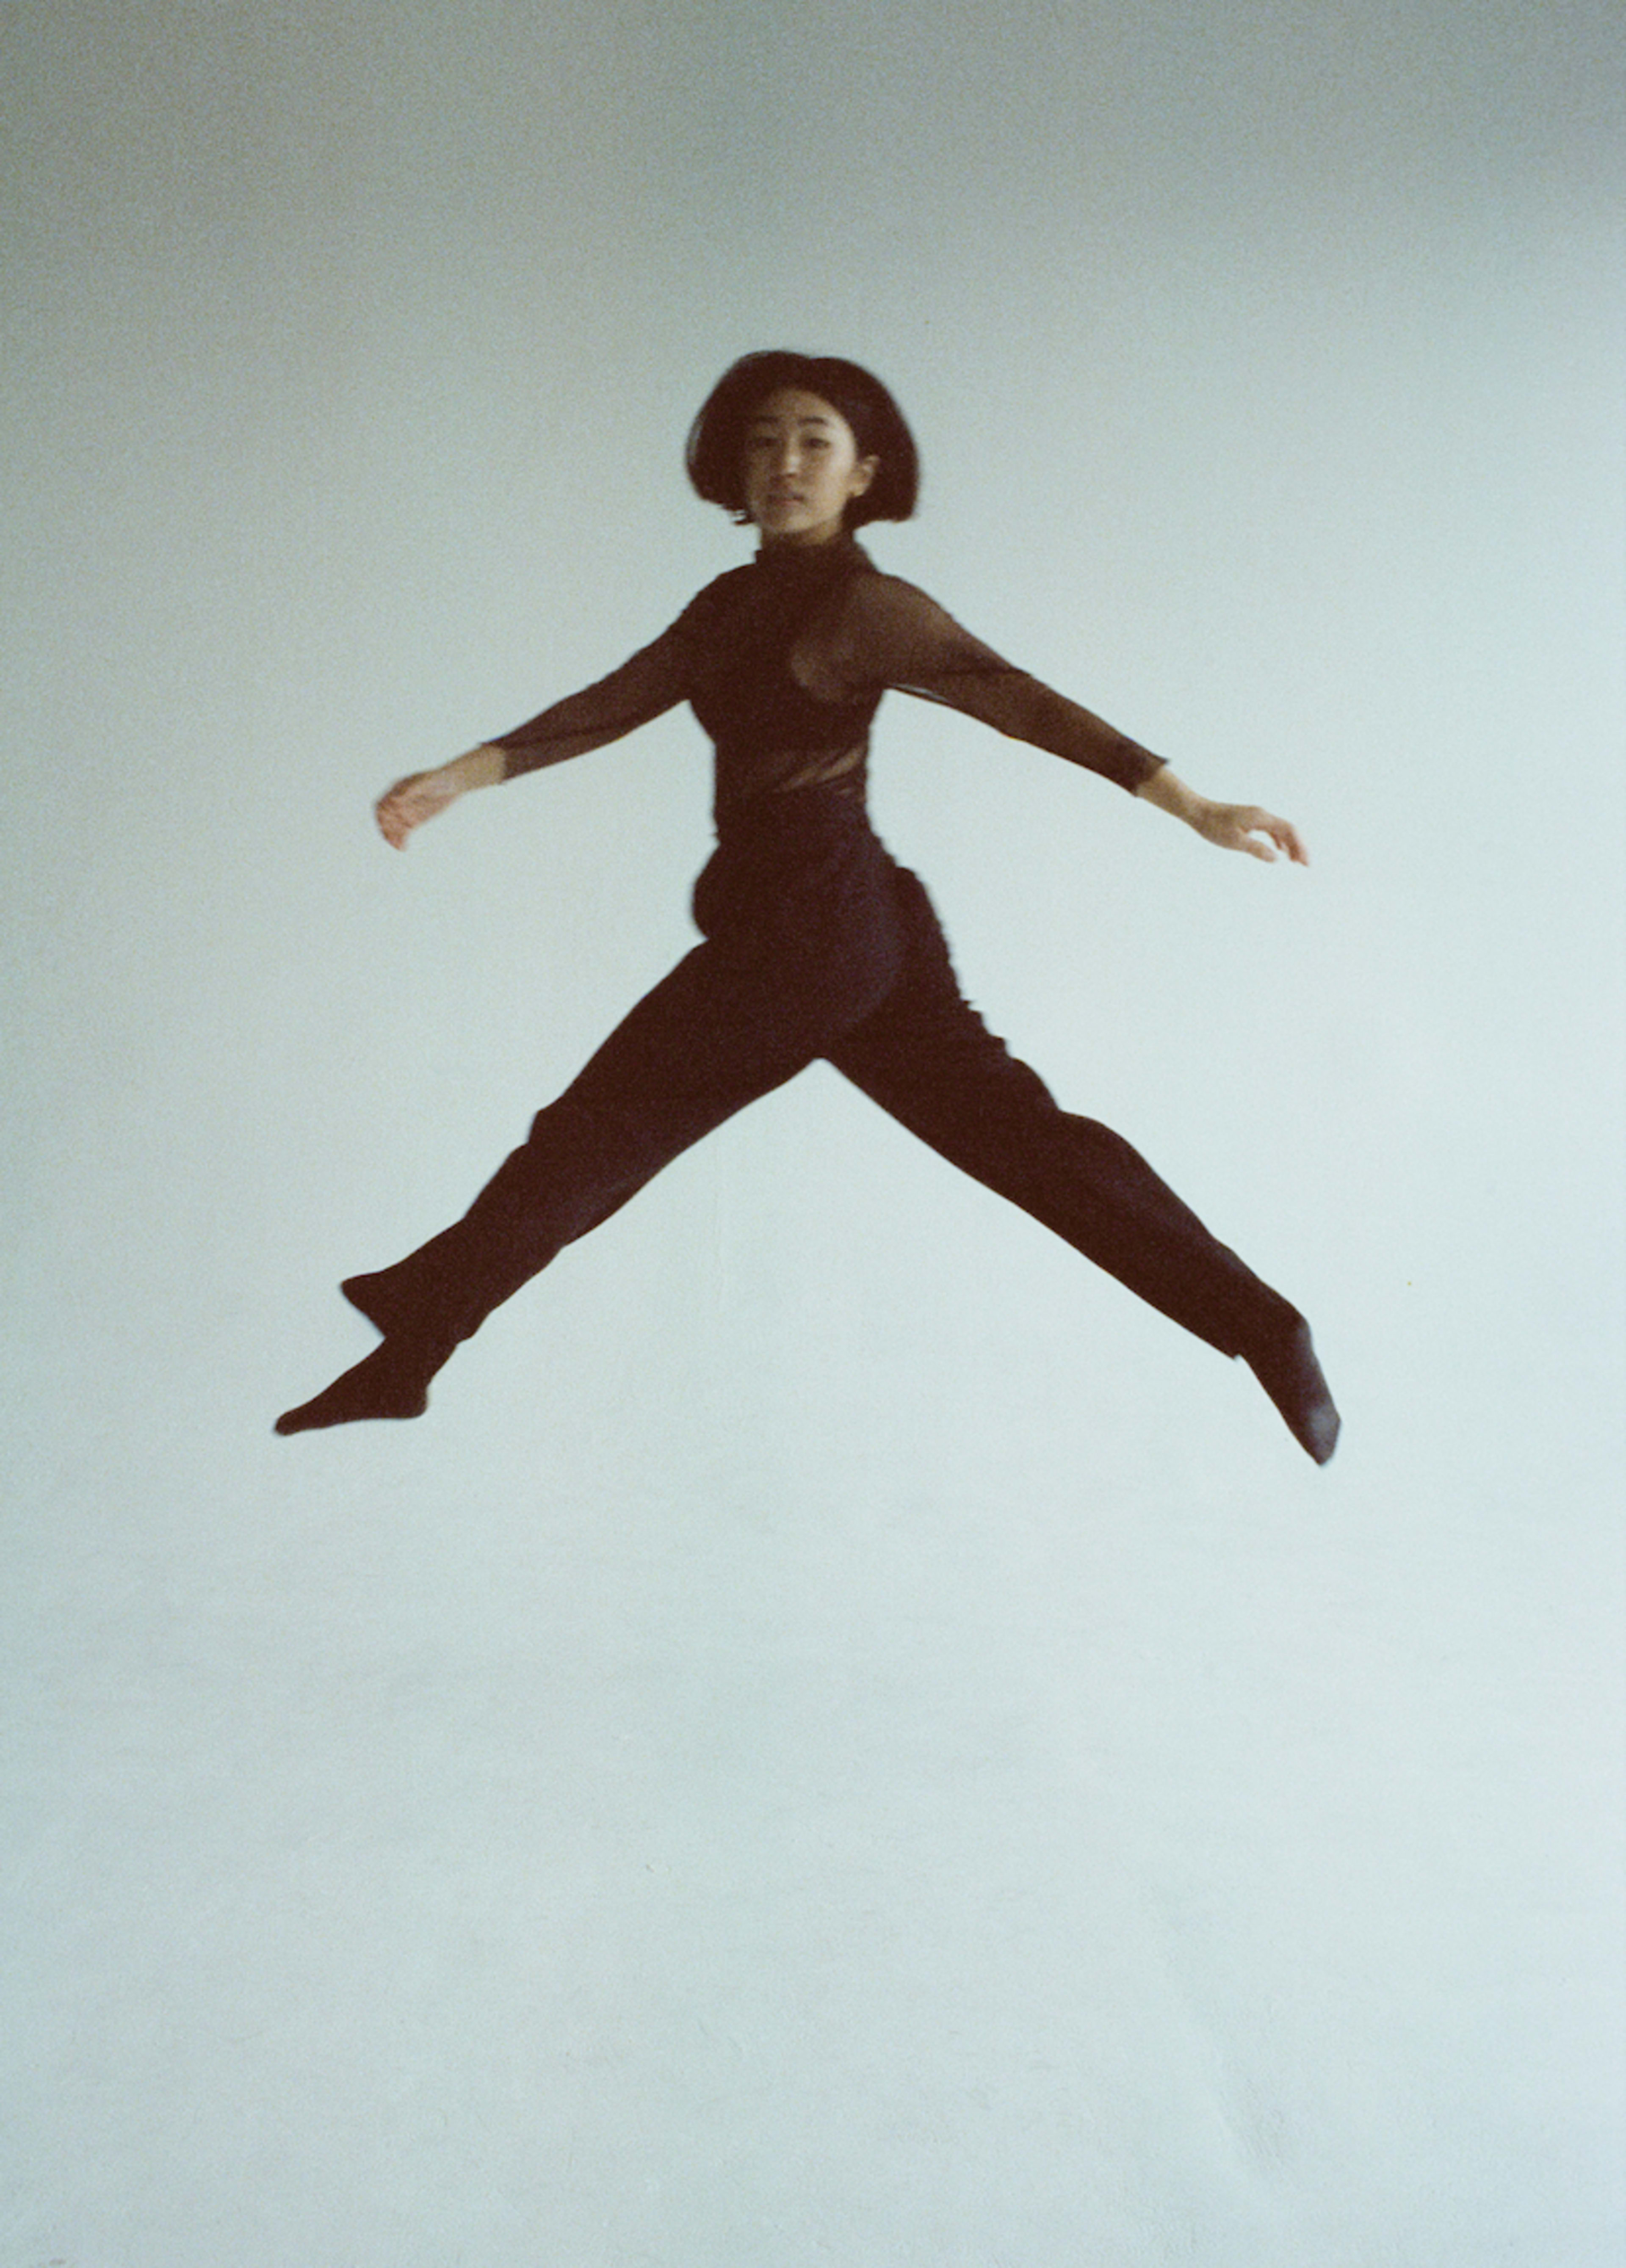 Une femme en tenue noire sautant lors d'un shooting photo.